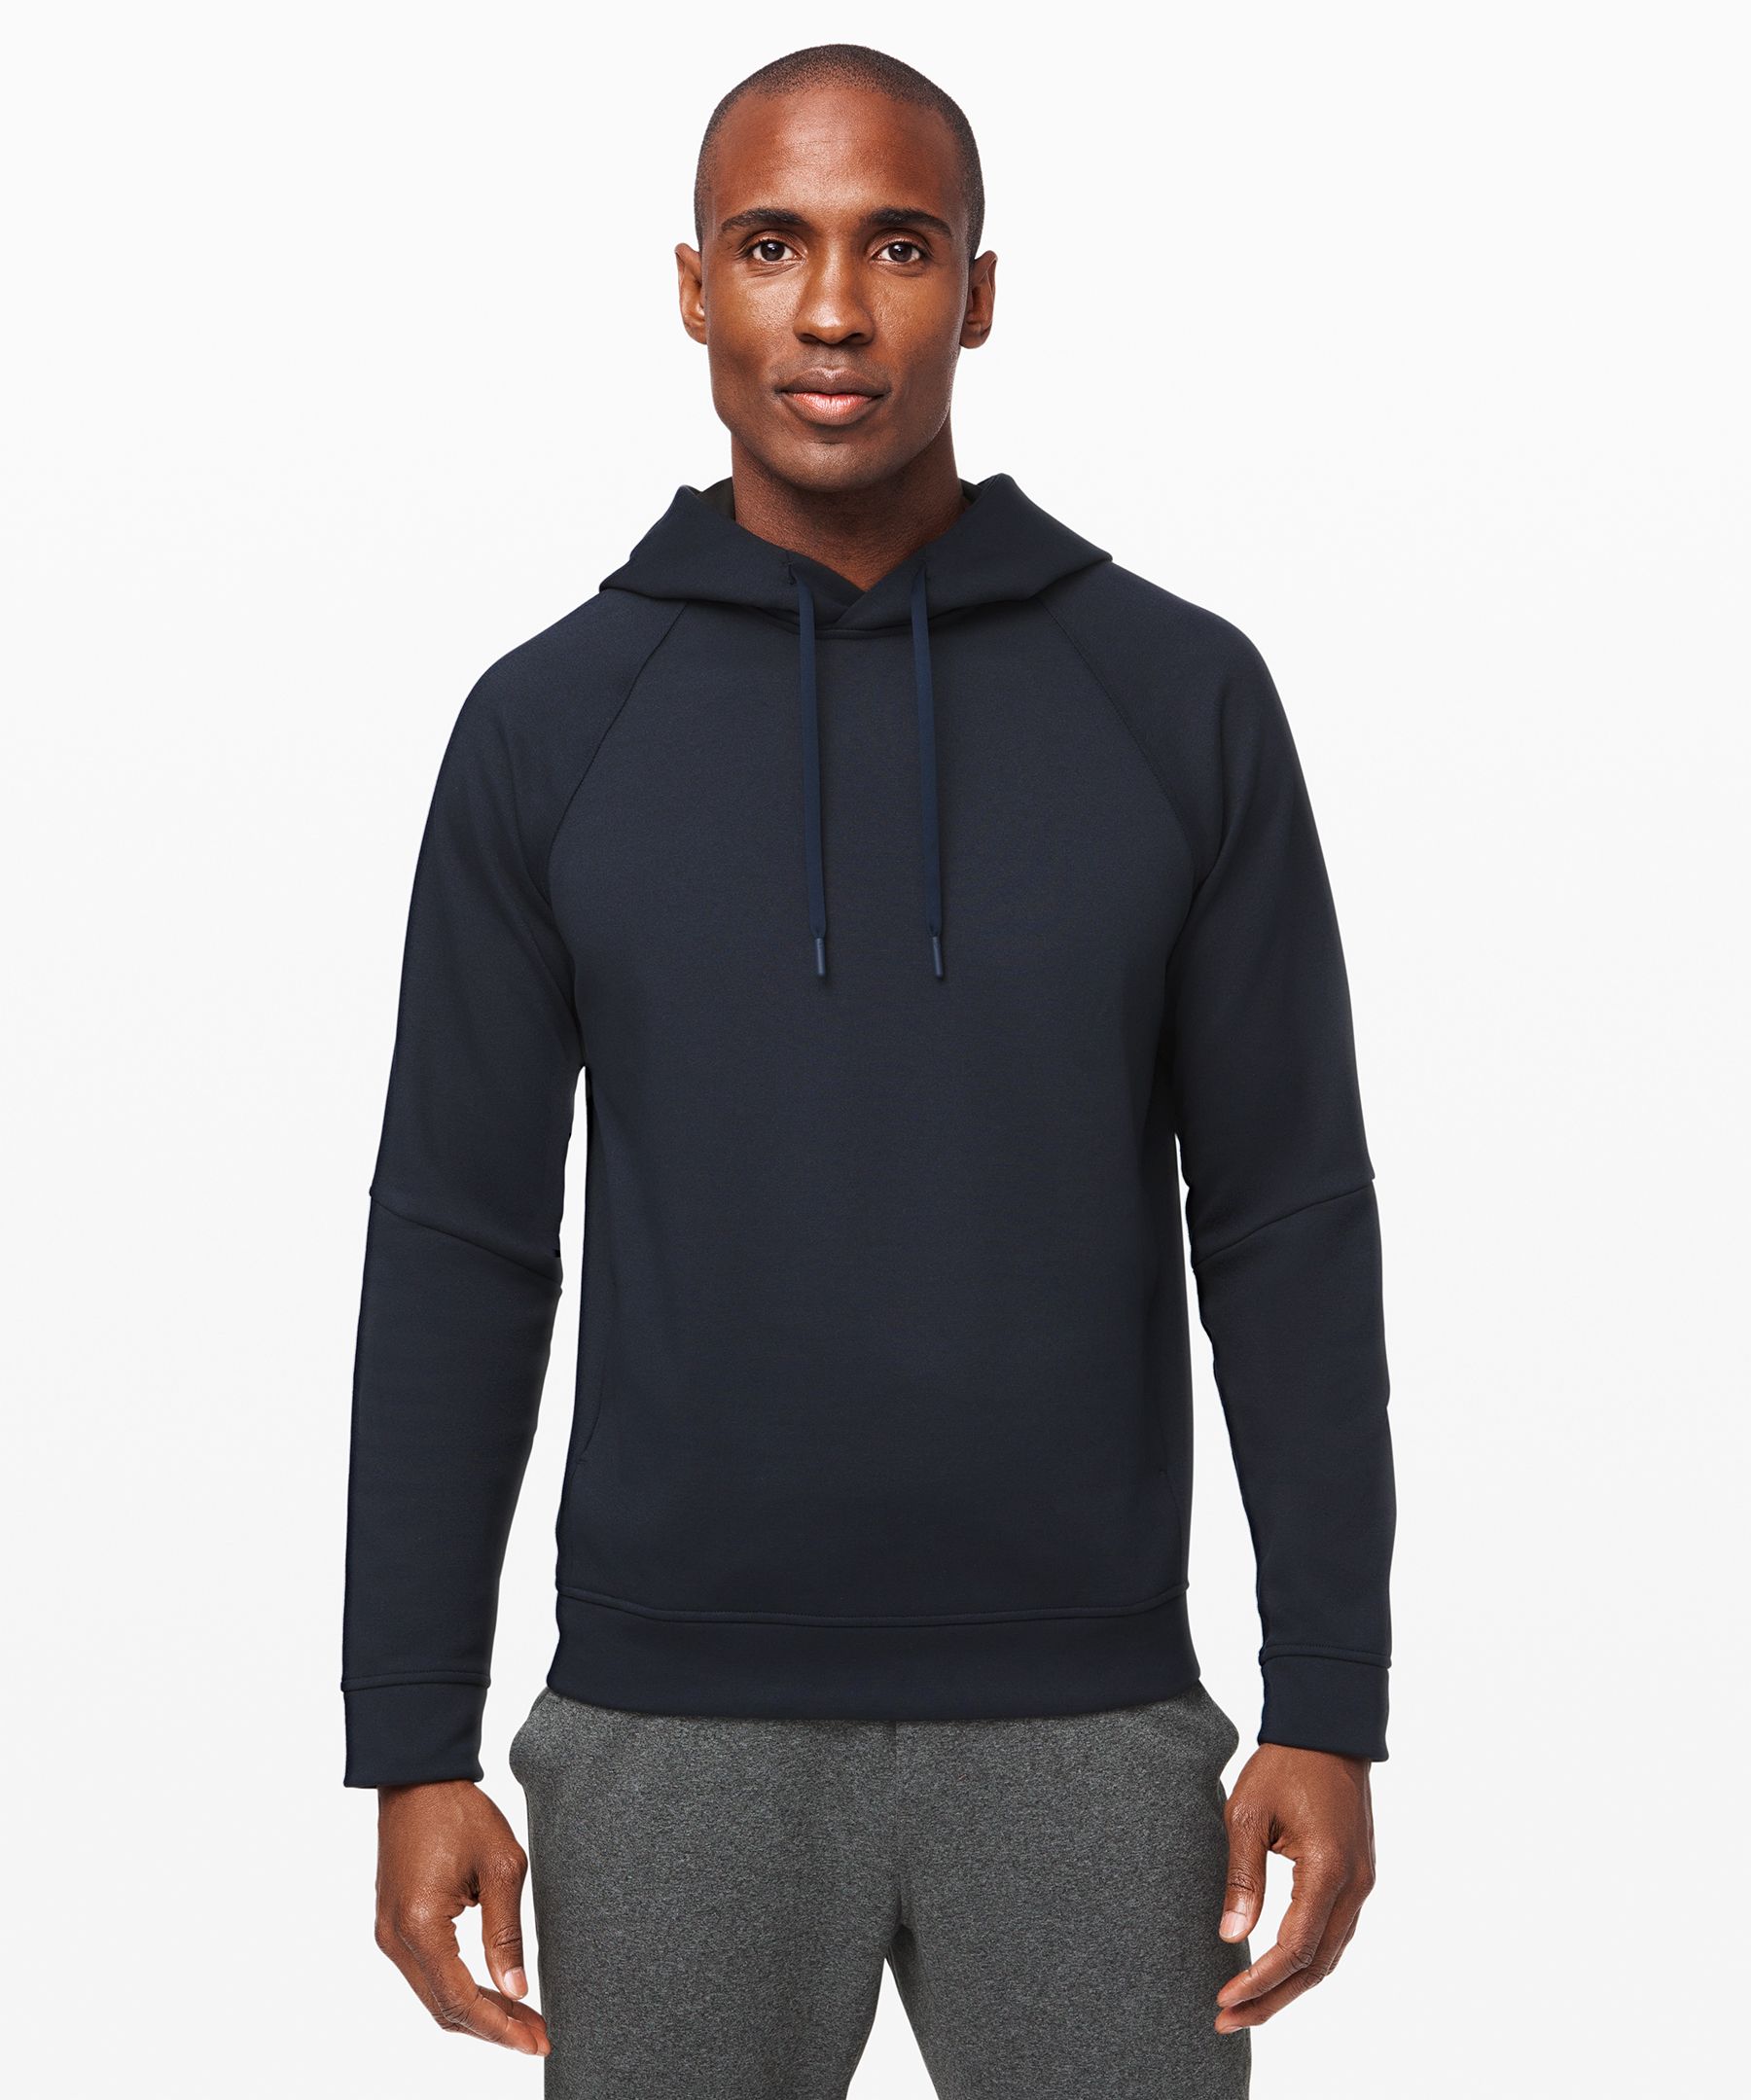 lululemon athletica men's hoodie template